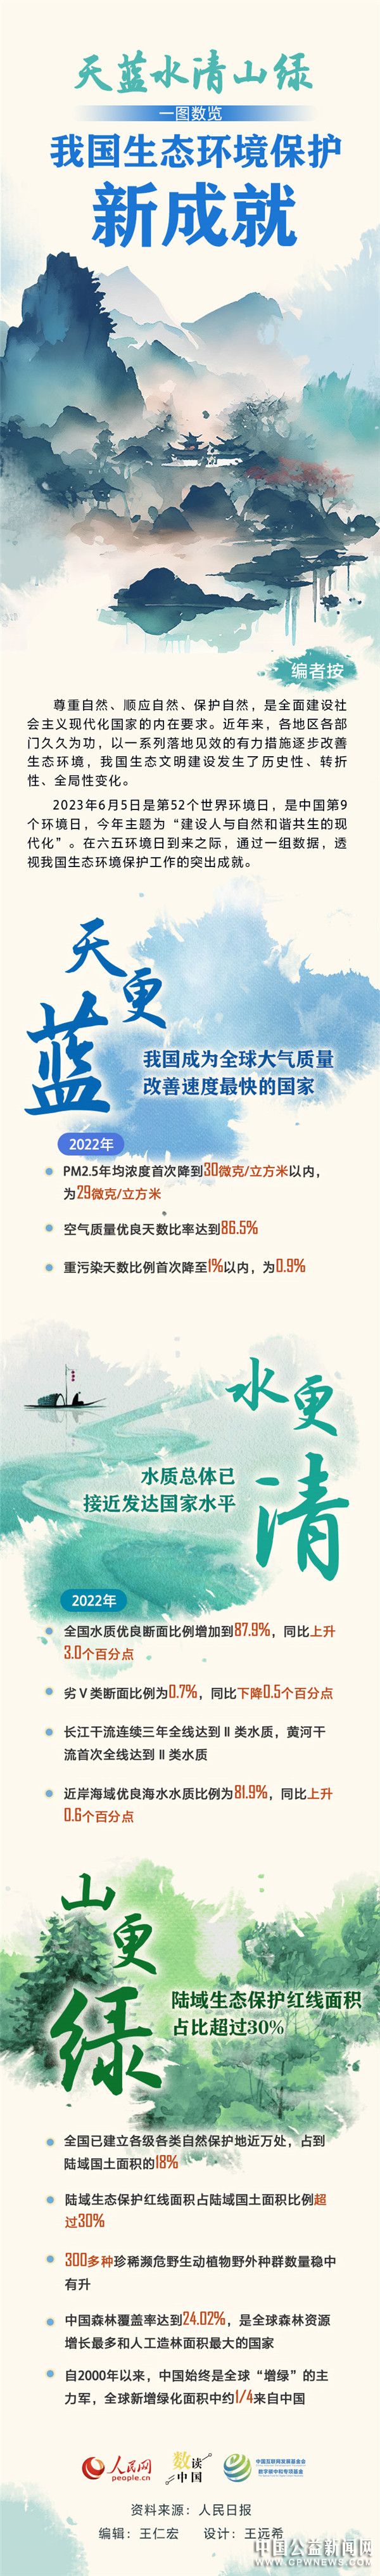 数读中国—— 天蓝水清山绿 一图数览我国生态环境保护新成就